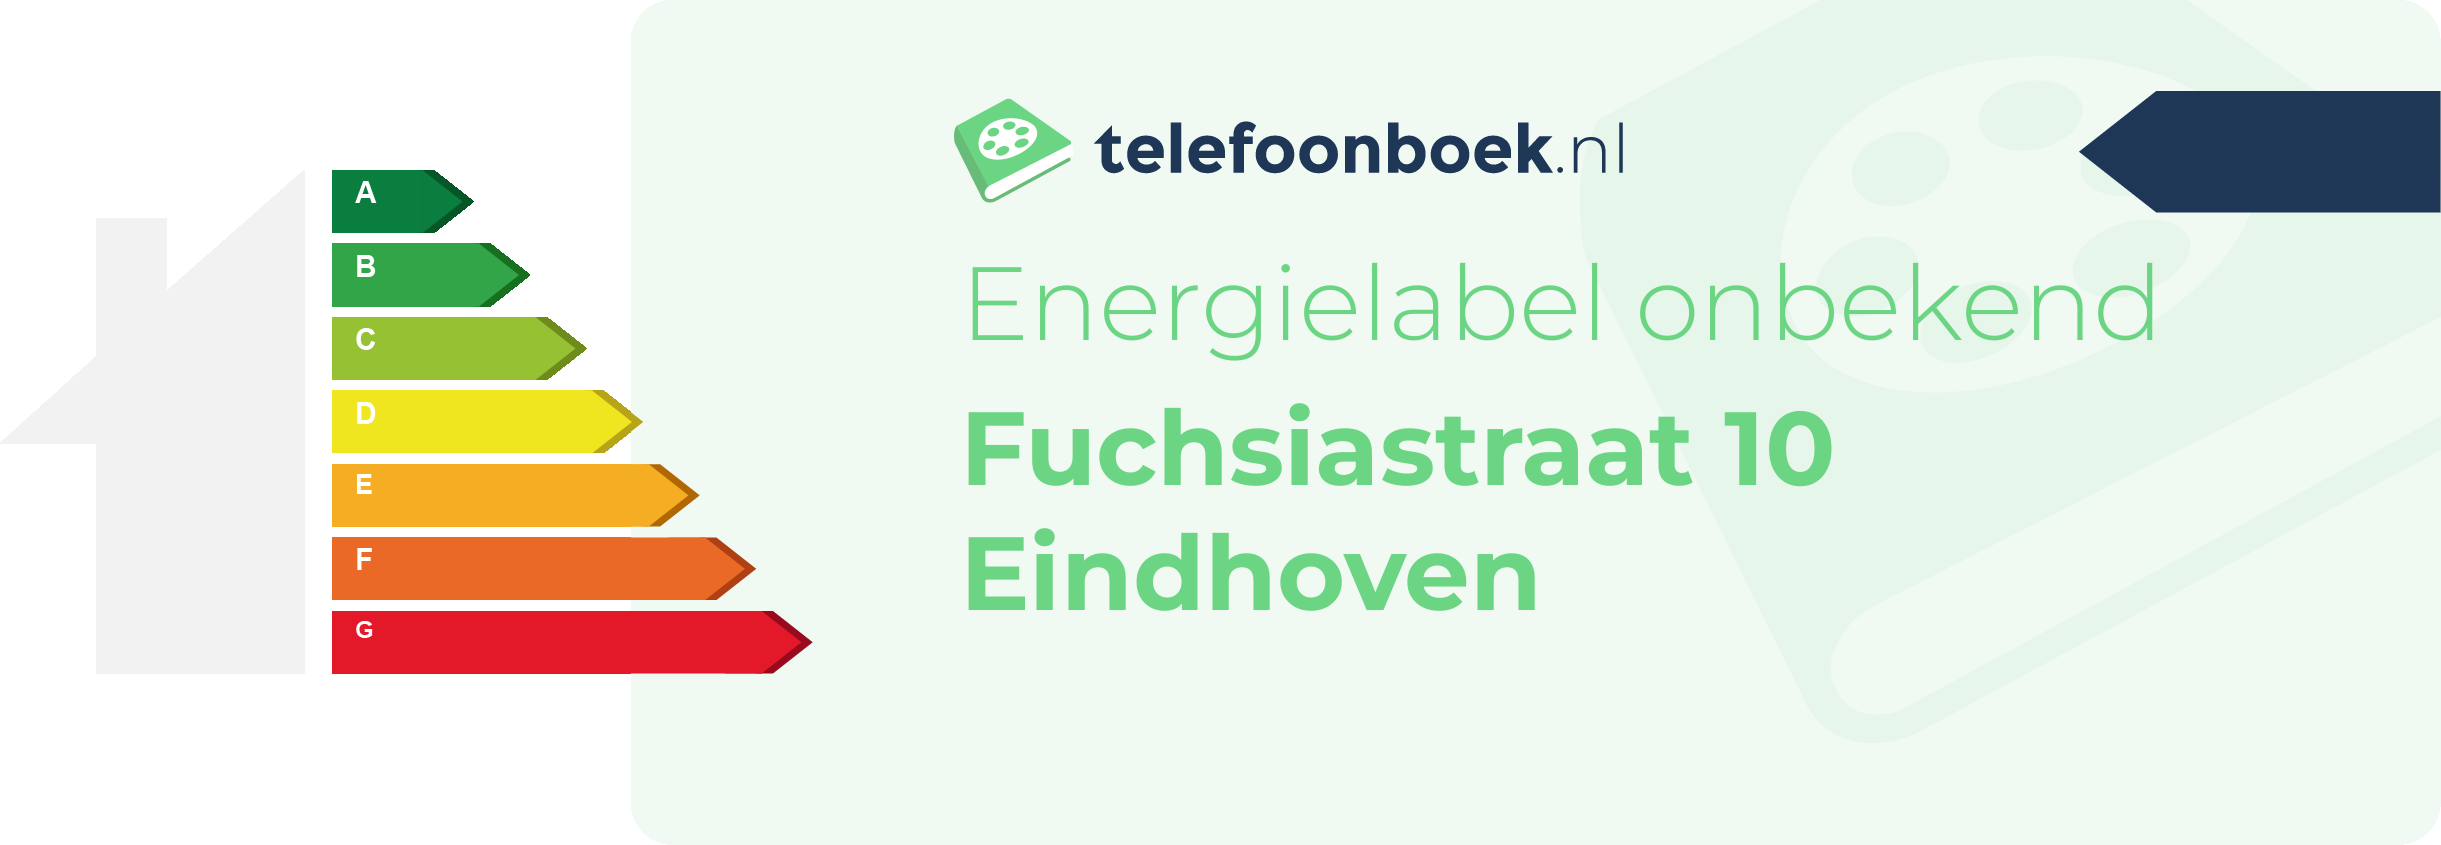 Energielabel Fuchsiastraat 10 Eindhoven